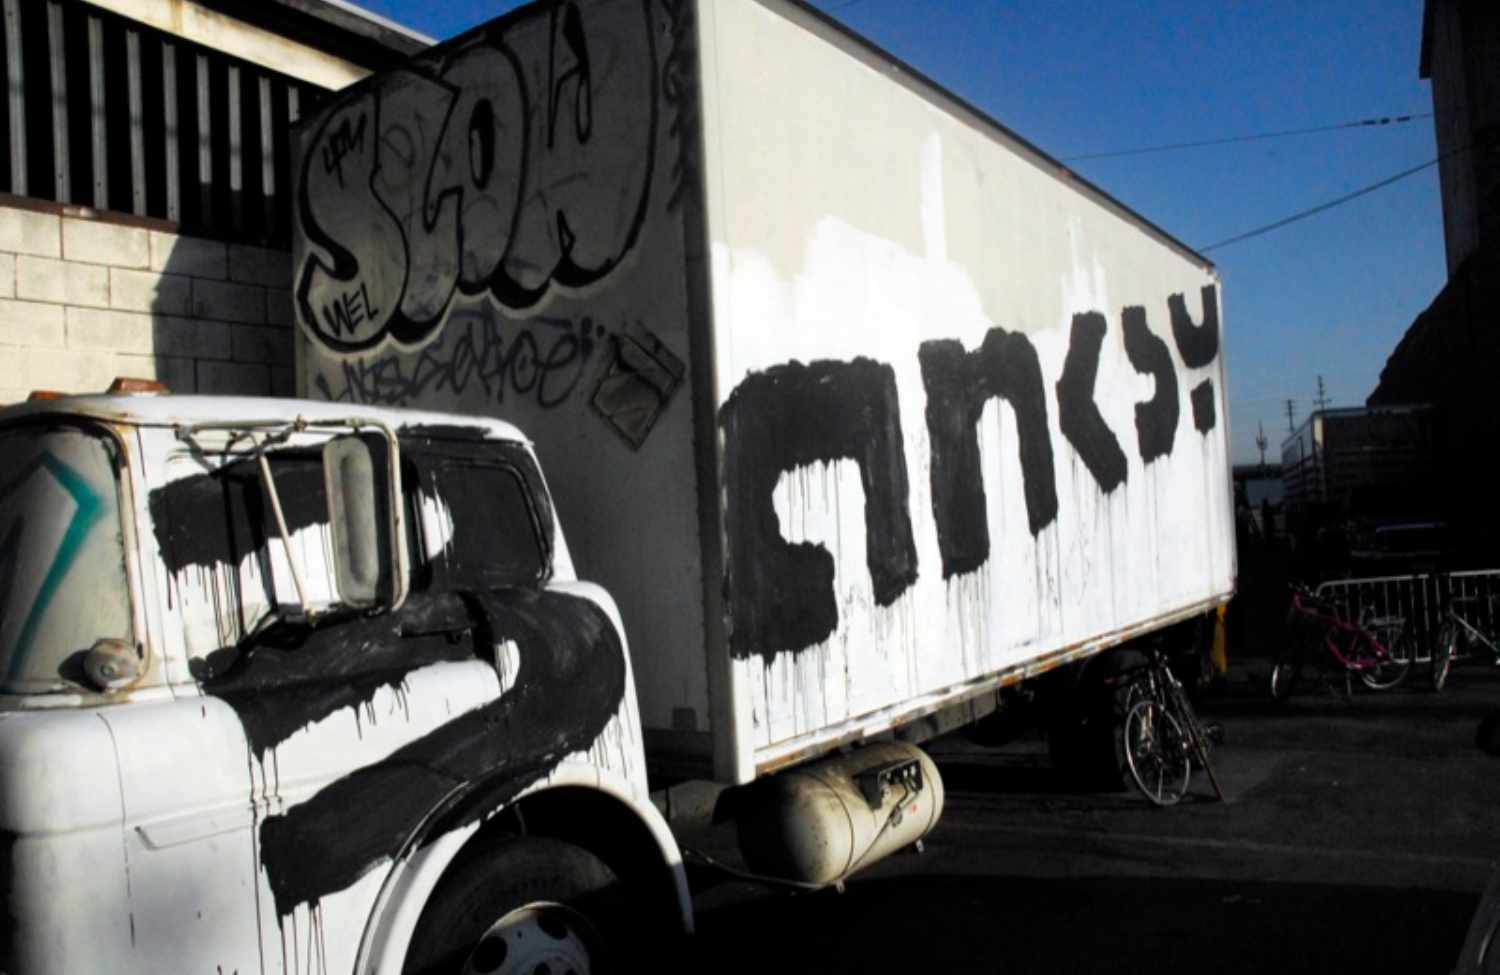 Podpis Banksy'ego na ciężarówce Fot. WikiMedia, licencja: Creative Commons Attribution 2.0 Generic